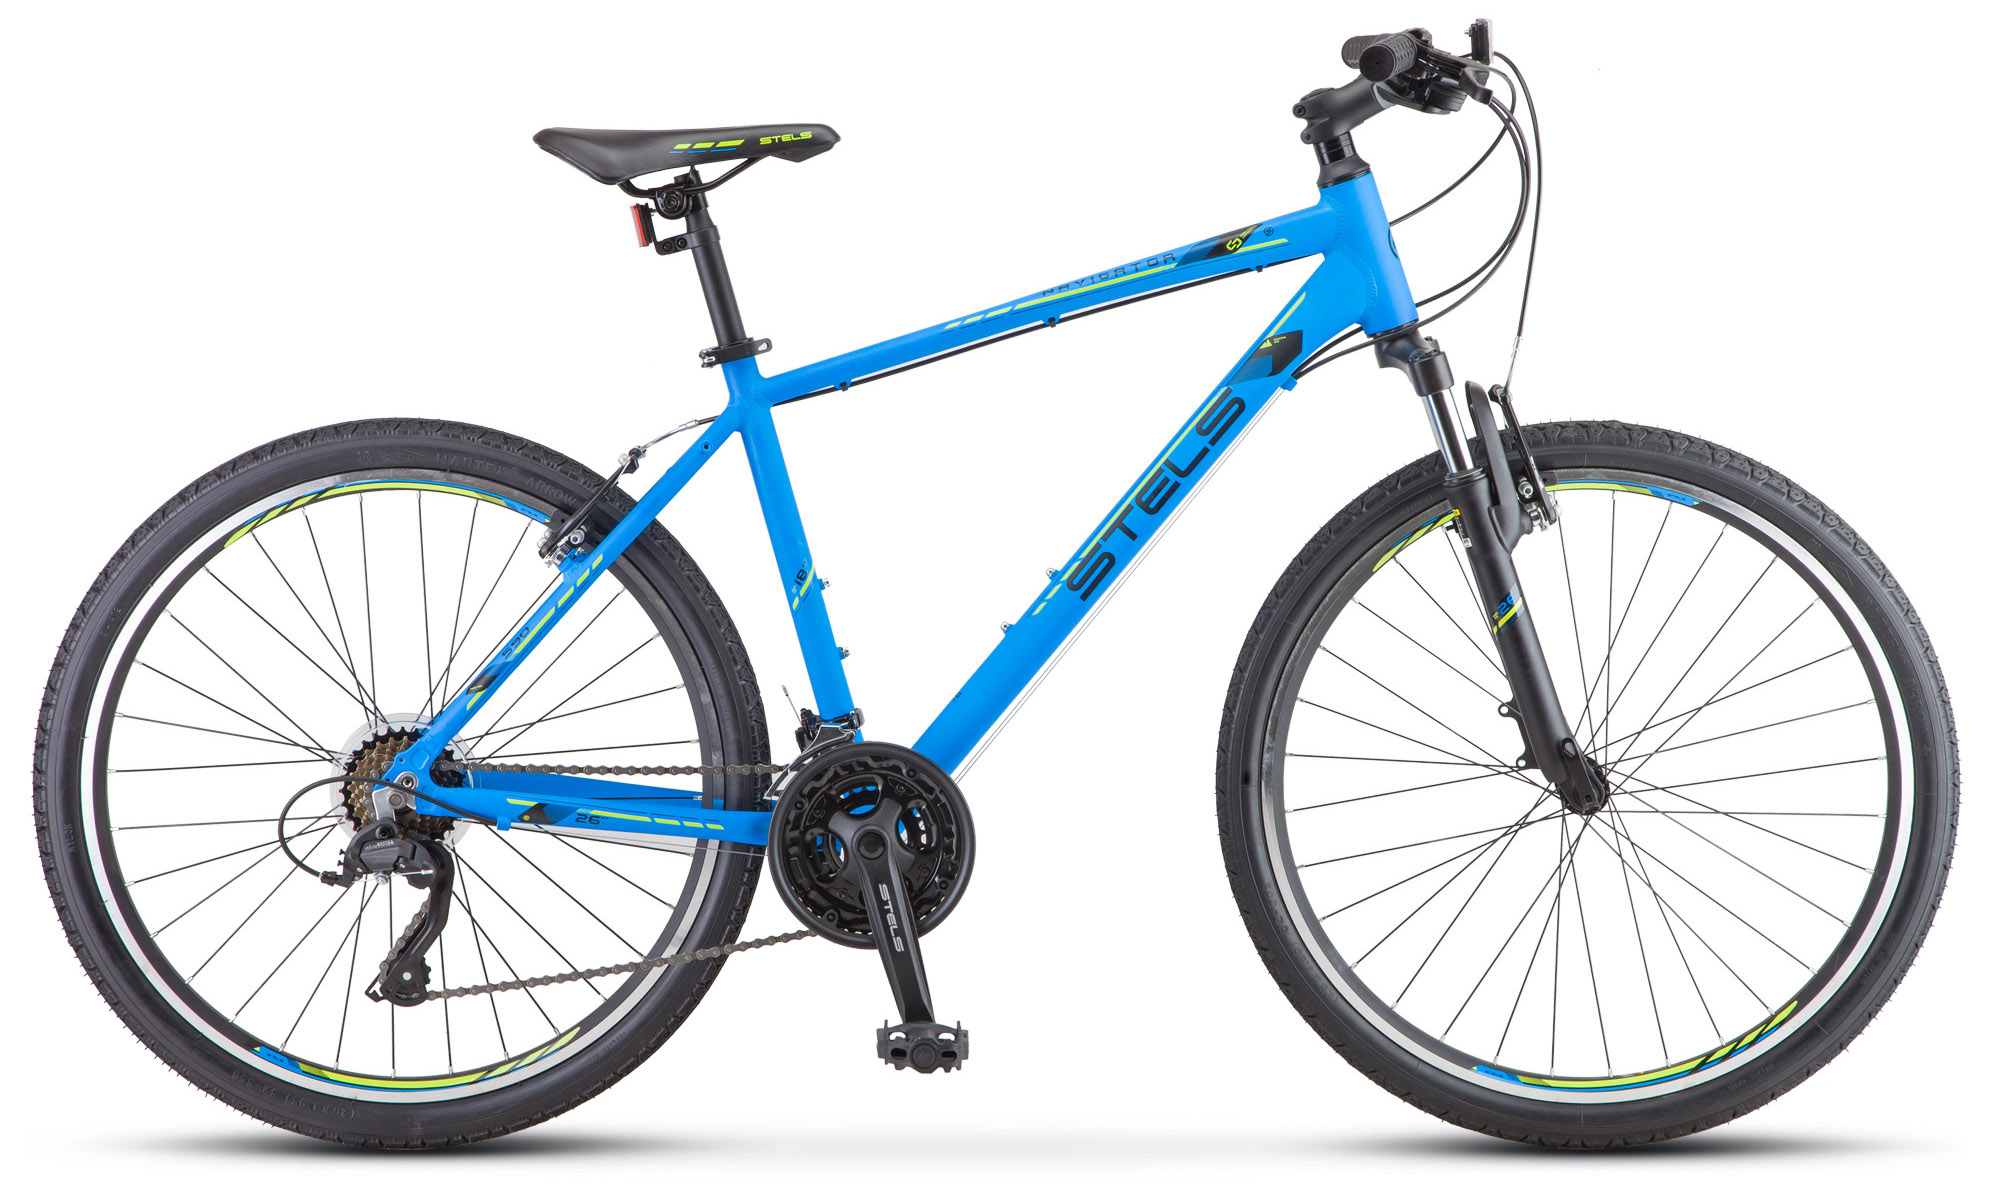  Отзывы о Горном велосипеде Stels горный велосипед Stels Navigator 590 V K010 2020 2020